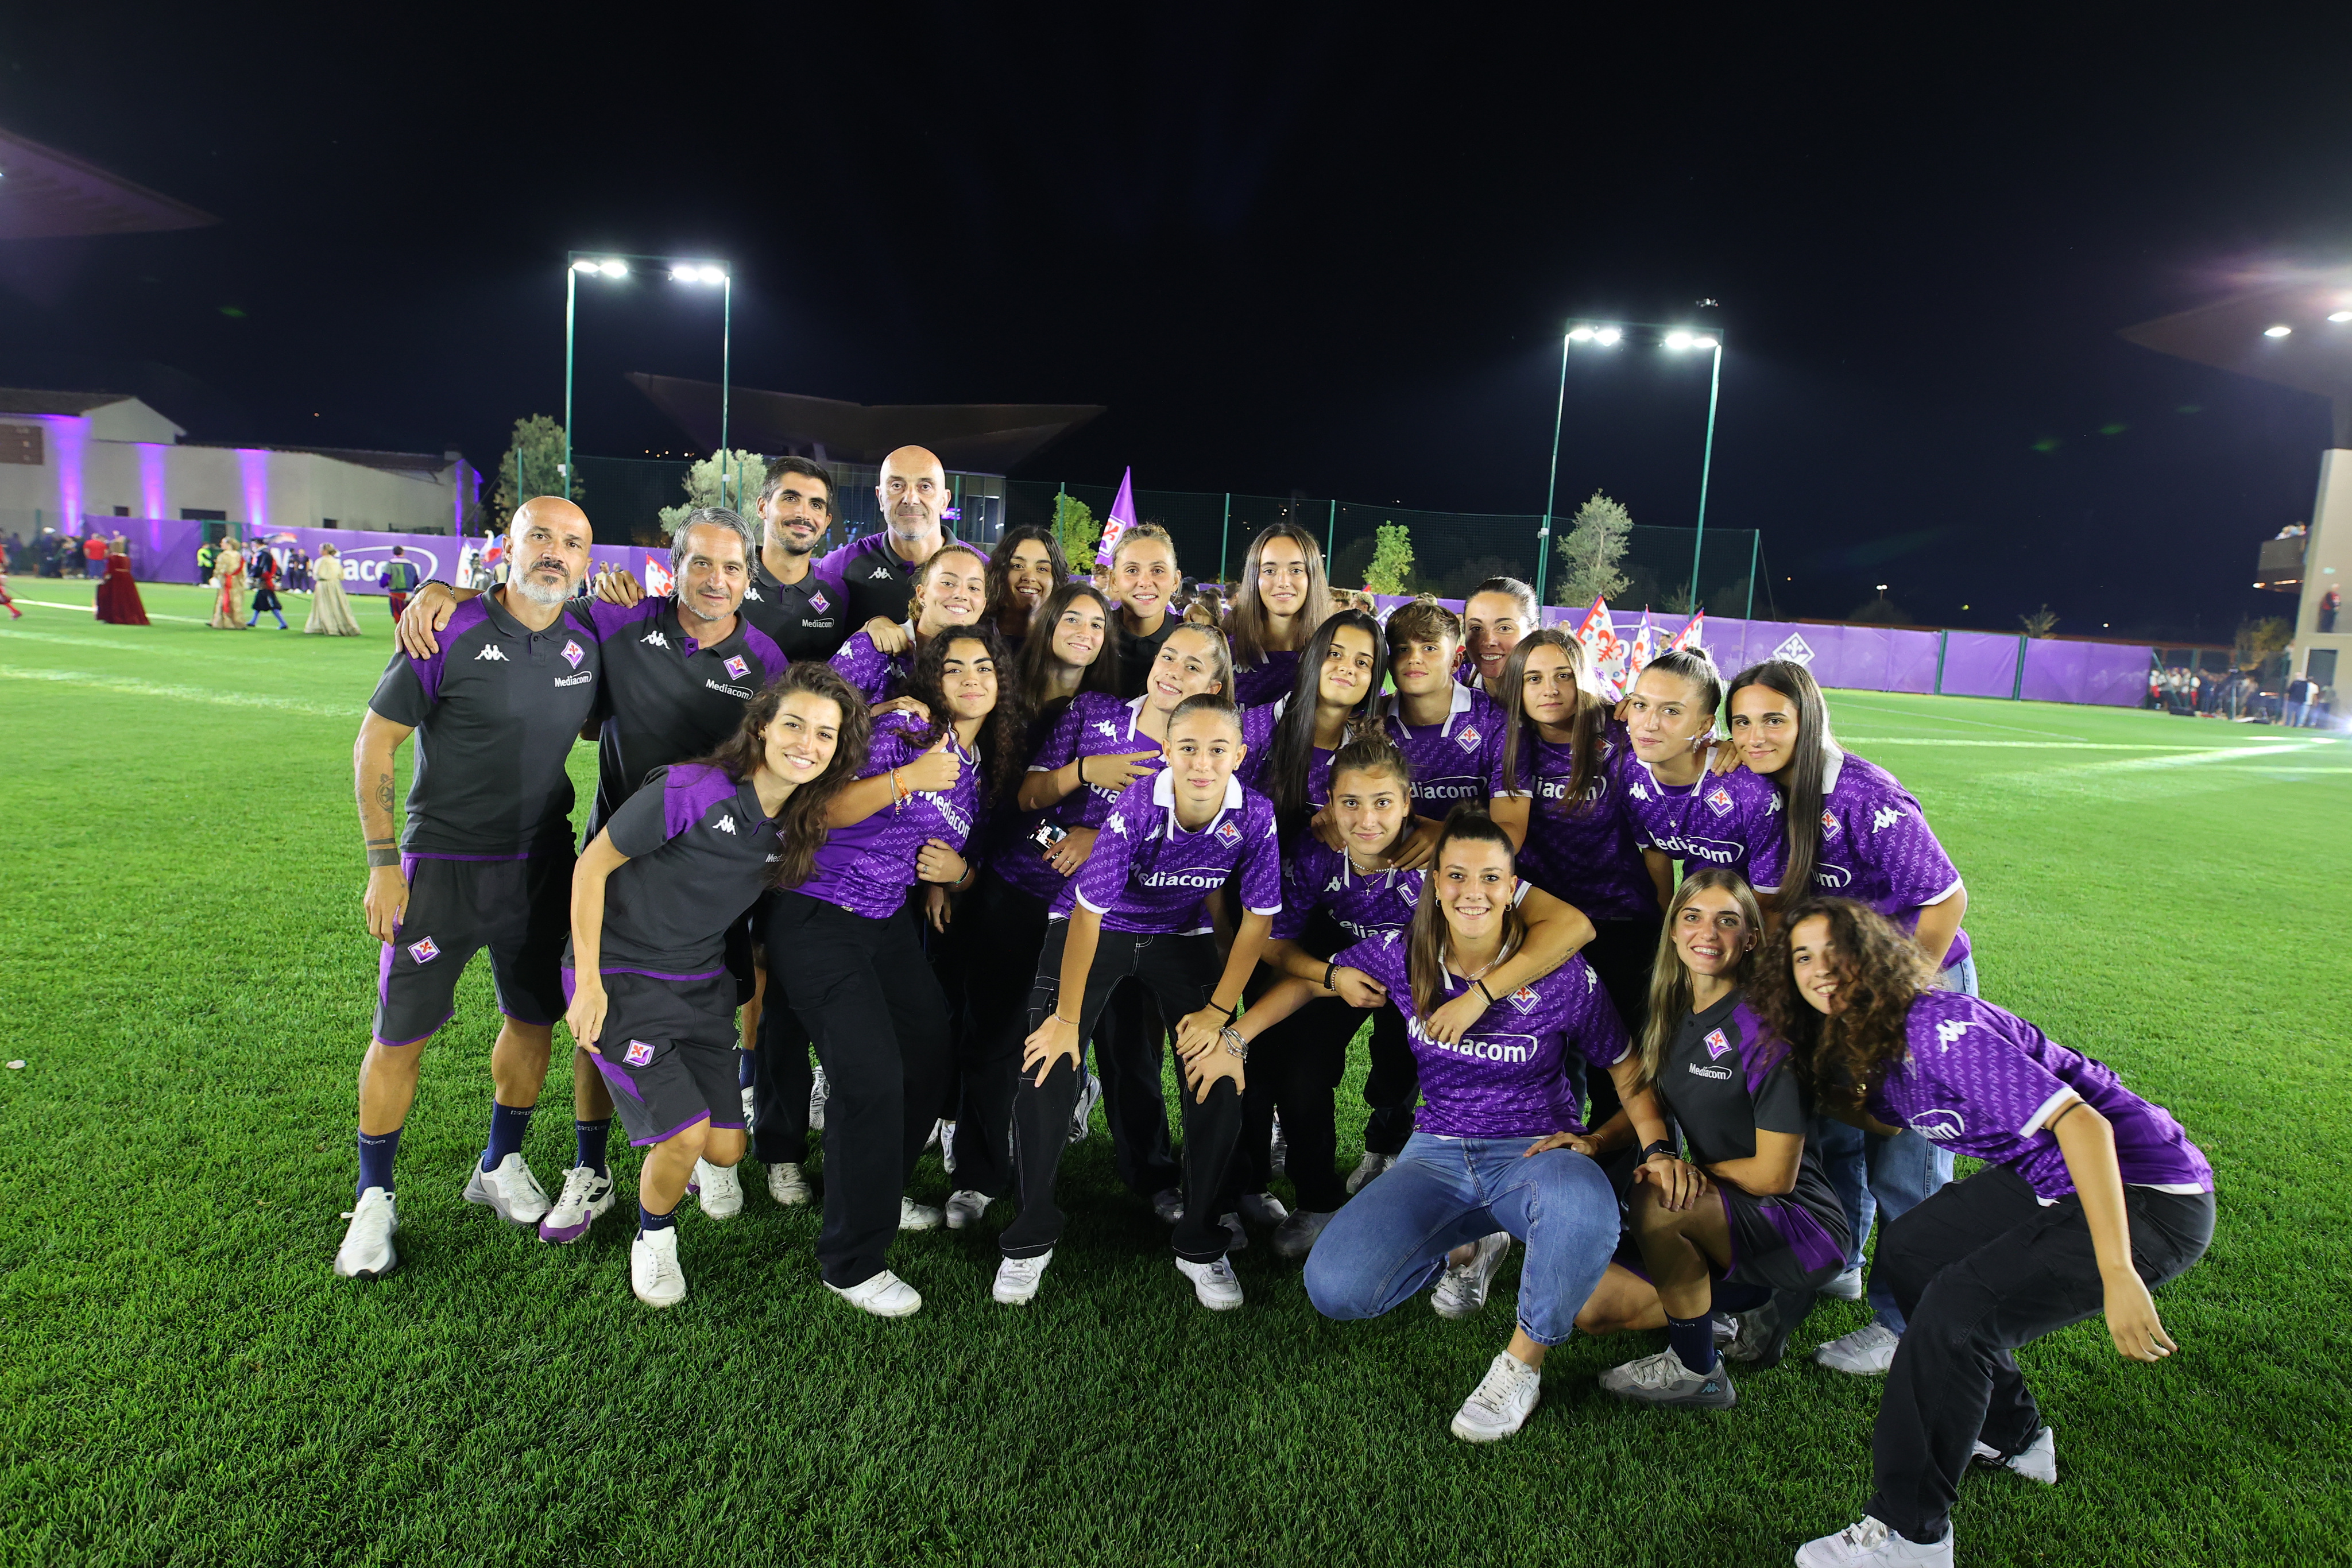 ACF Fiorentina e linkem rinnovano la partnership e lanciano il fiorentina  pack - Calcio femminile italiano